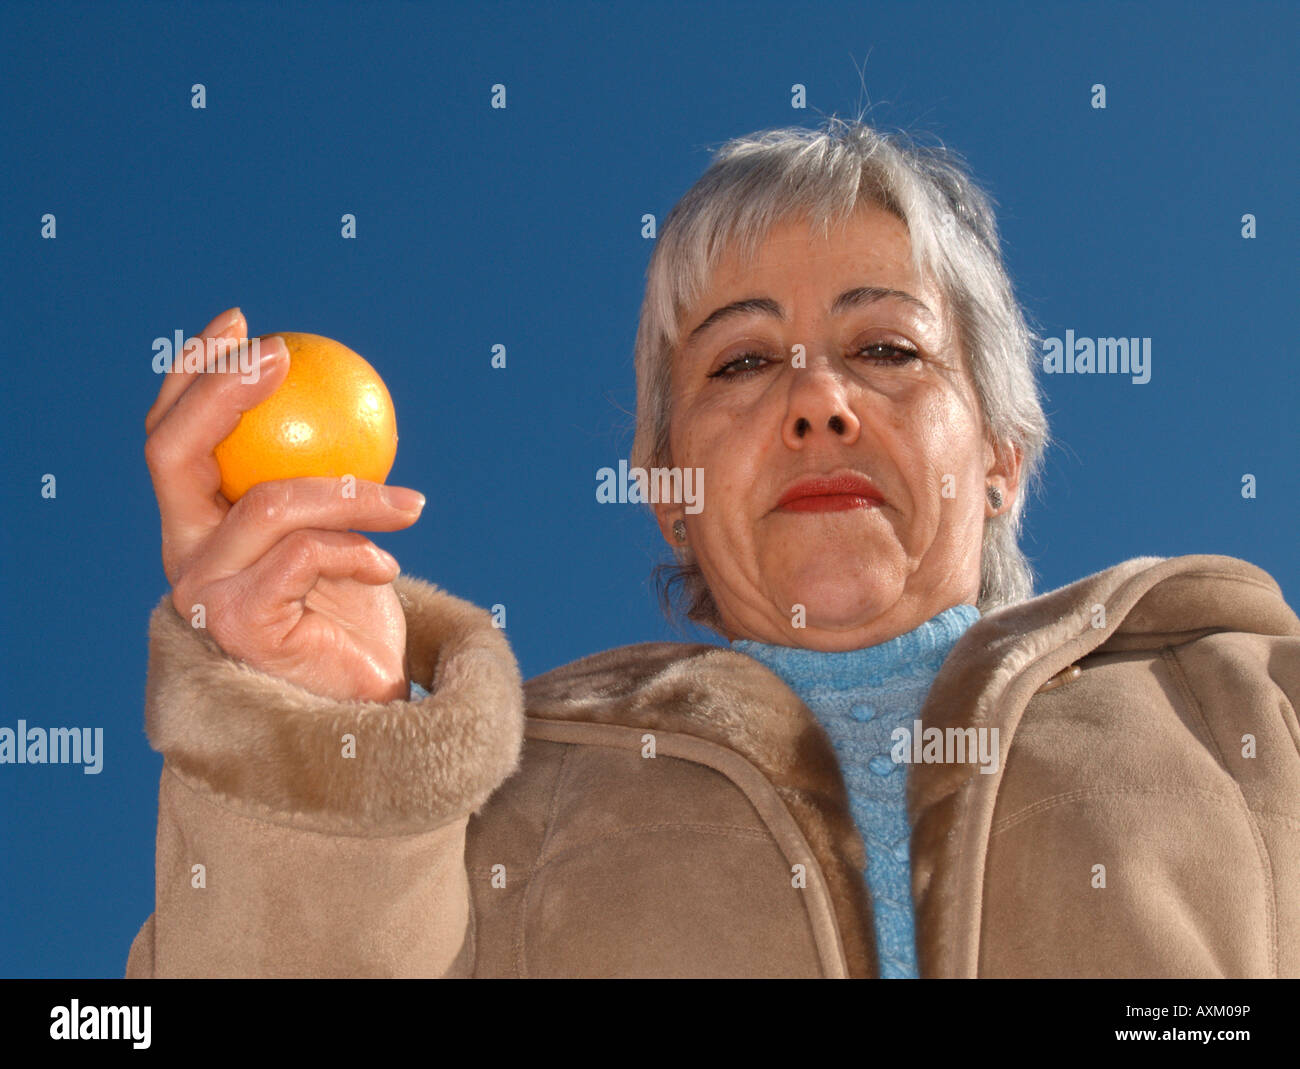 Portrait de femme adulte mature montrant une orange Banque D'Images